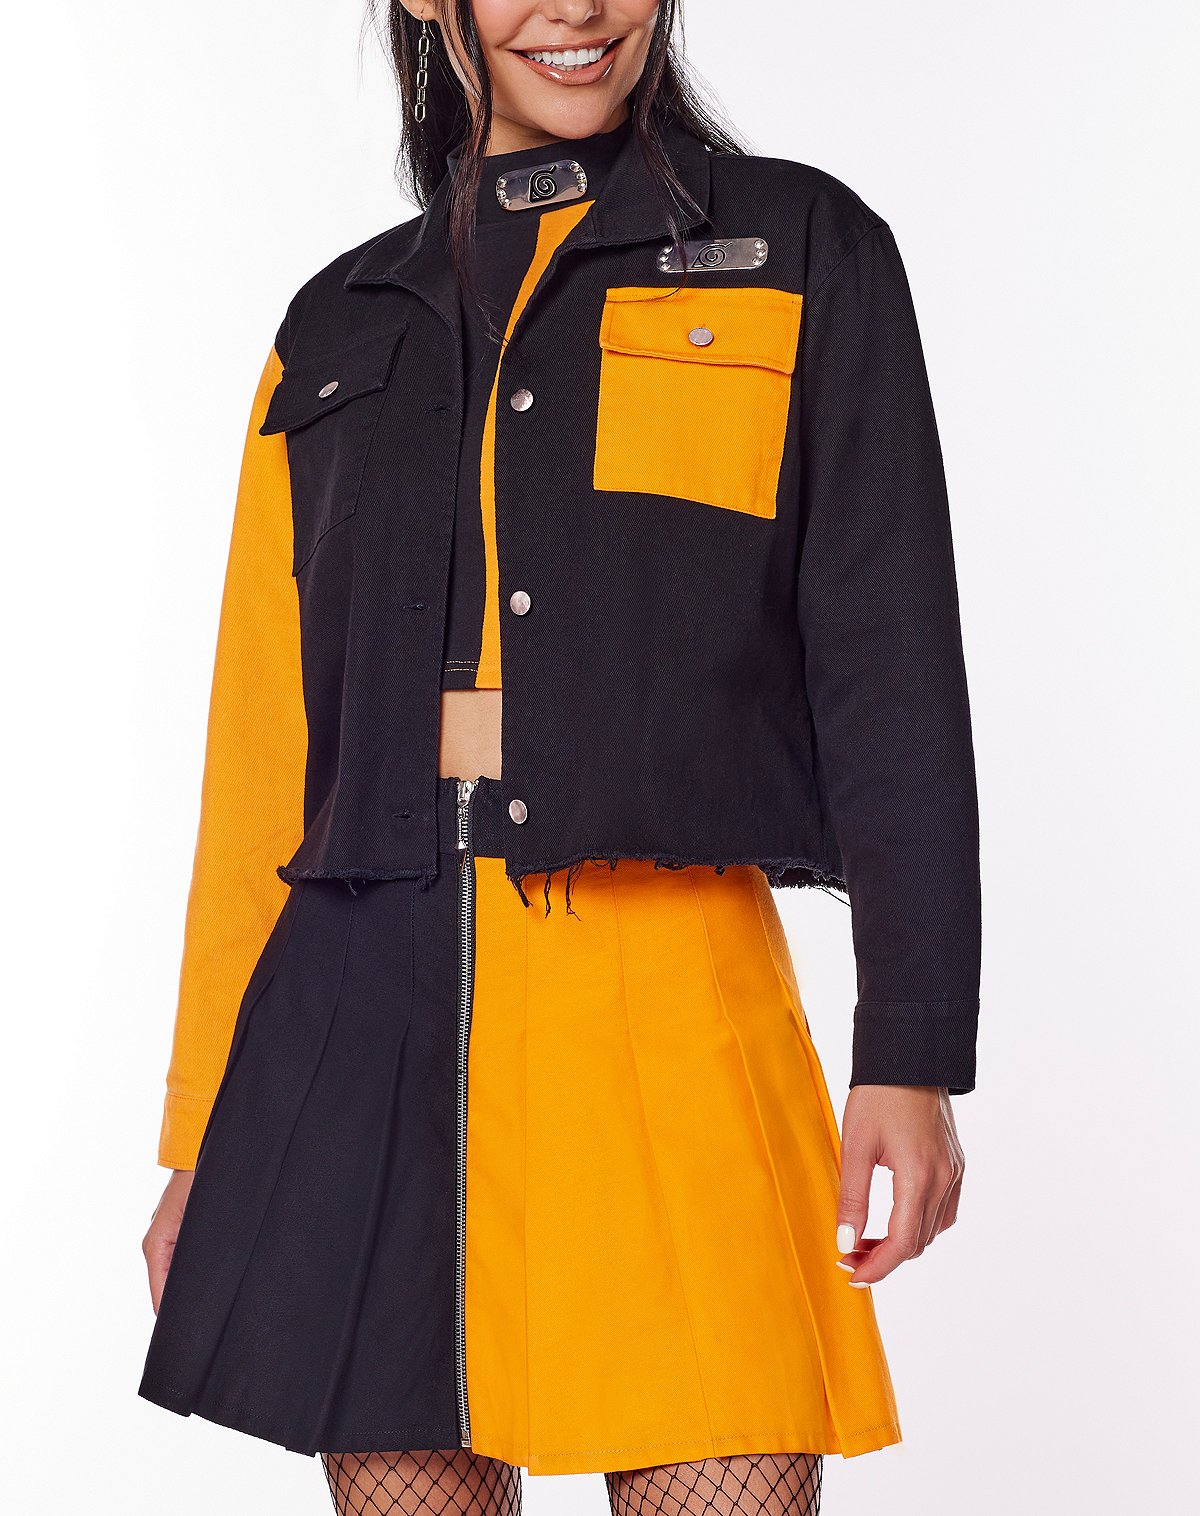 Naruto Crop Top Jacket – Naruto Shippuden